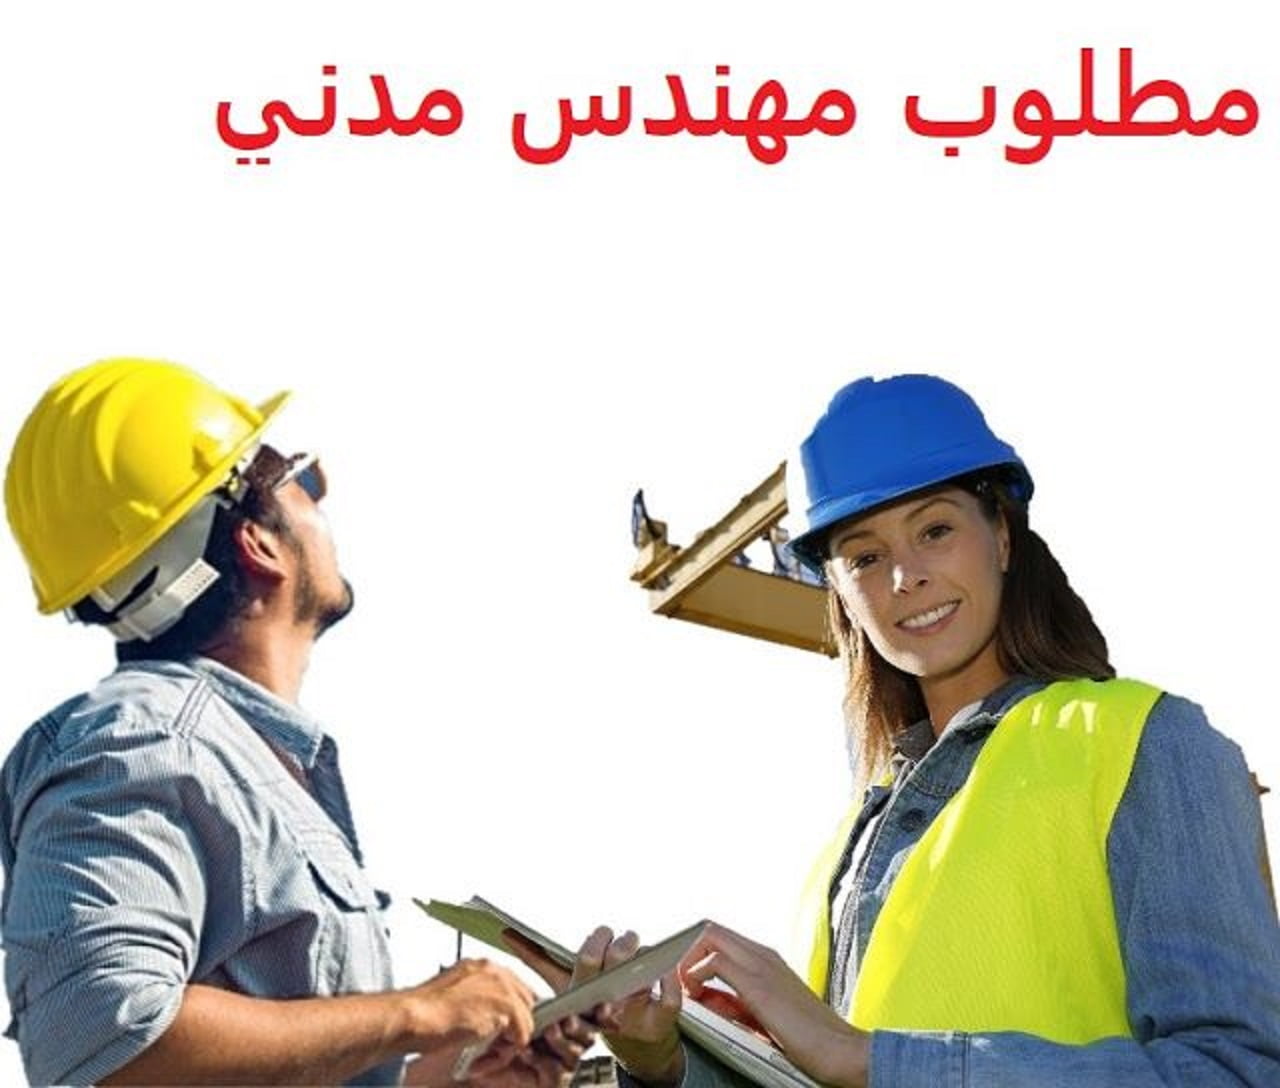 وظائف مهندسين مدنى للمقيمين فى السعودية